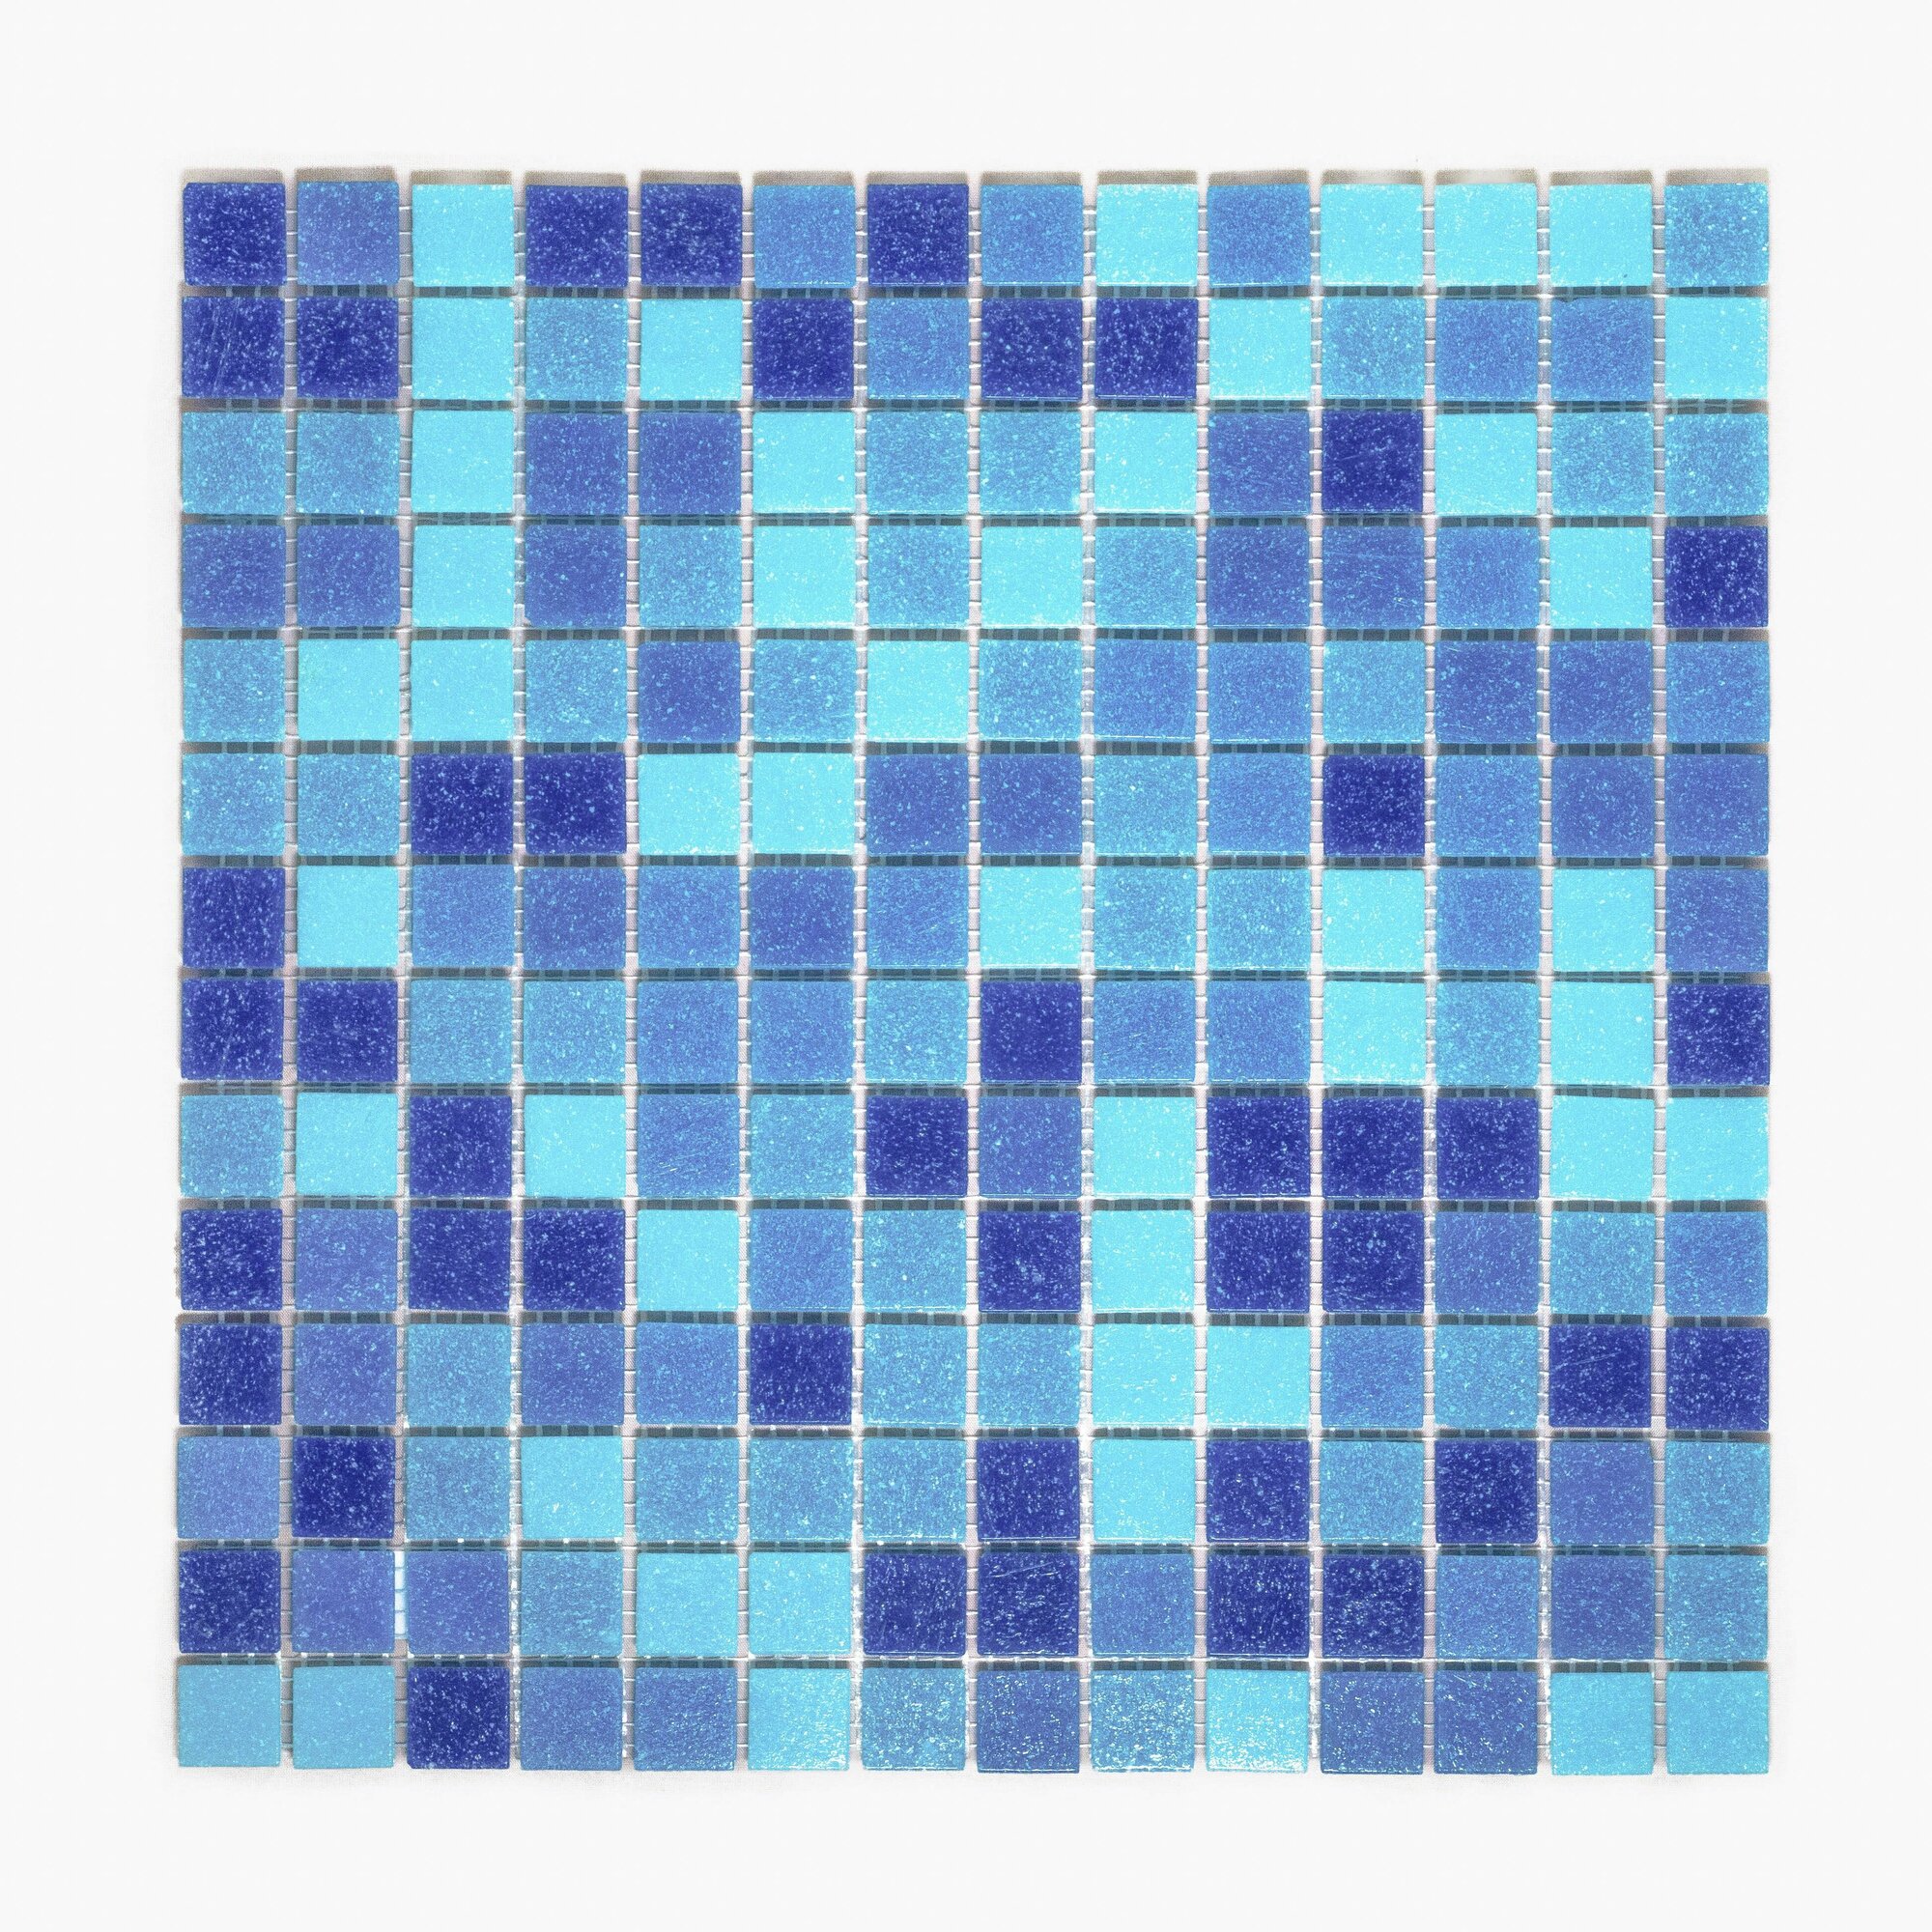 Плитка мозаика MIRO (серия Einsteinium №303), стеклянная плитка мозаика для ванной комнаты, для душевой, для фартука на кухне, 3 шт.